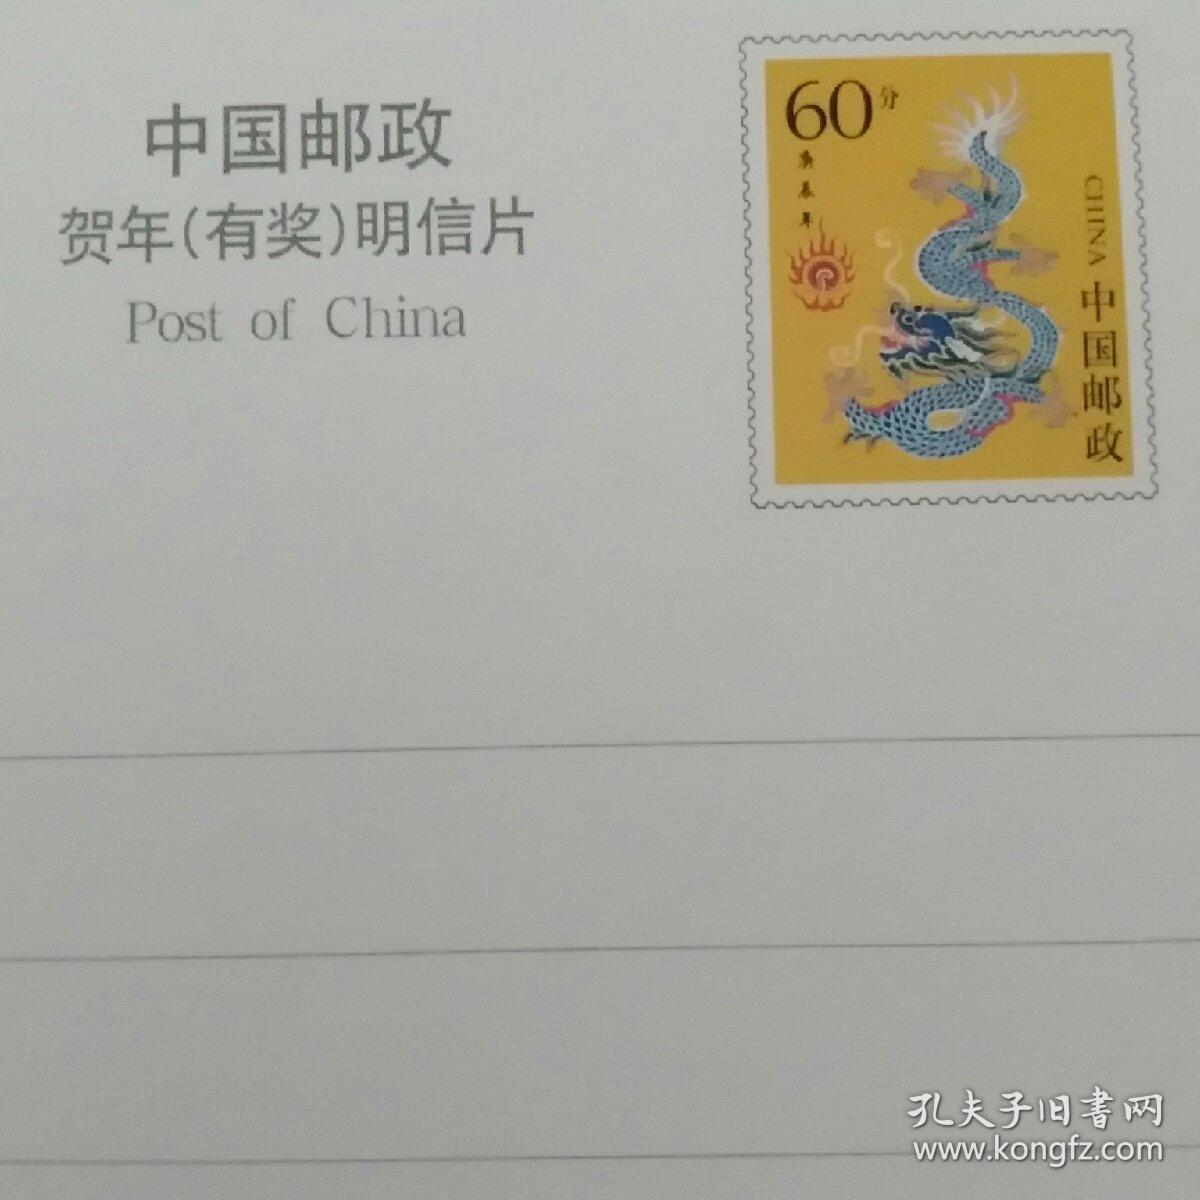 郓城县邮政局祝全县人民龙年大吉(中国邮政贺年有奖明信片)(邮票60分)